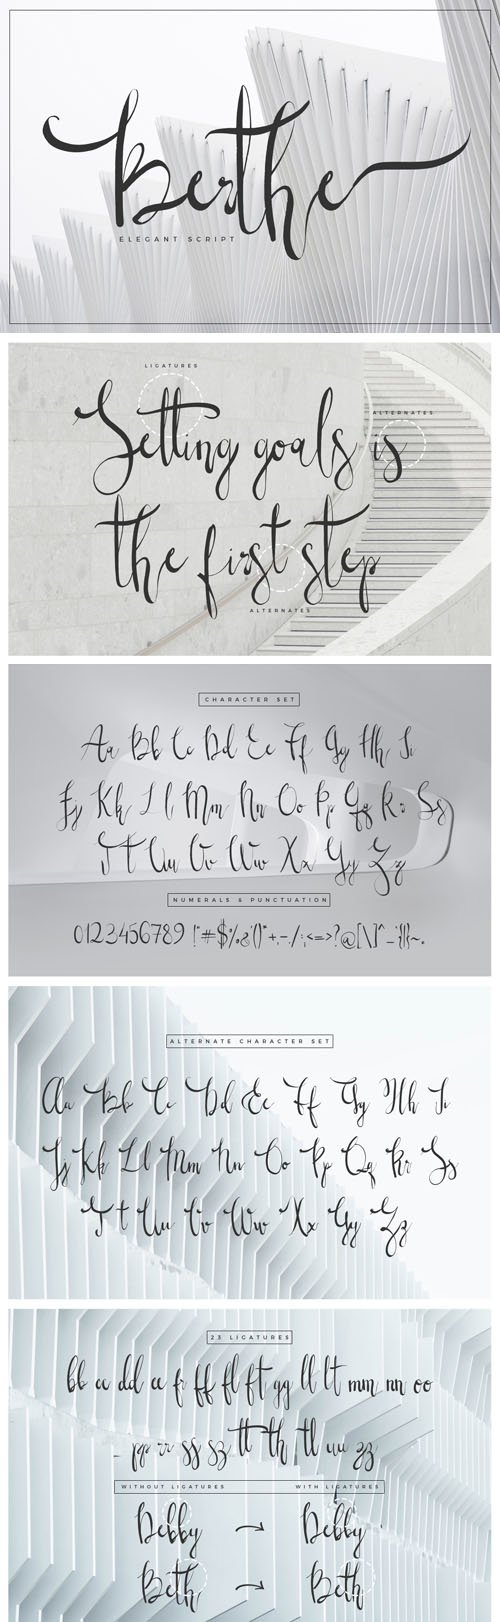 Berthe - Ellegant Script Signature Font